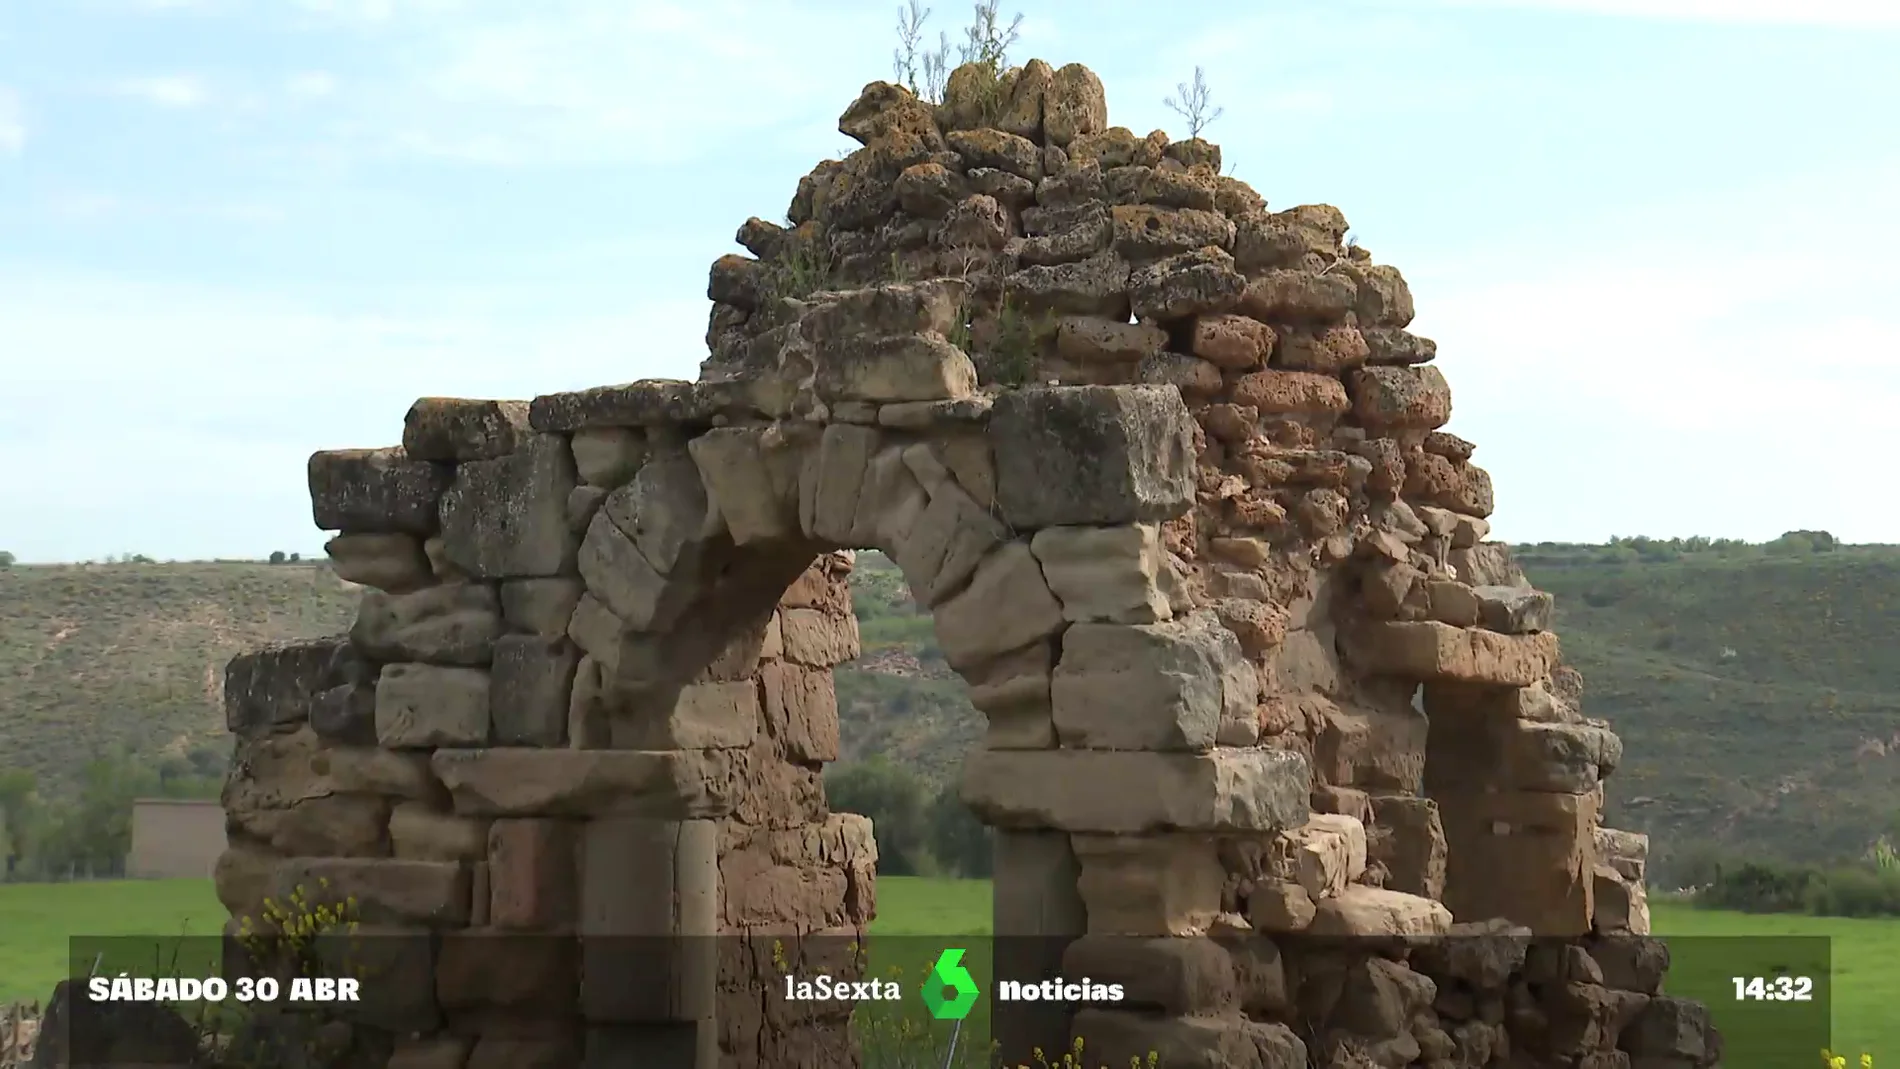 'Rutas contra el olvido': la iniciativa turística que revive y descubre La Rioja abandonada